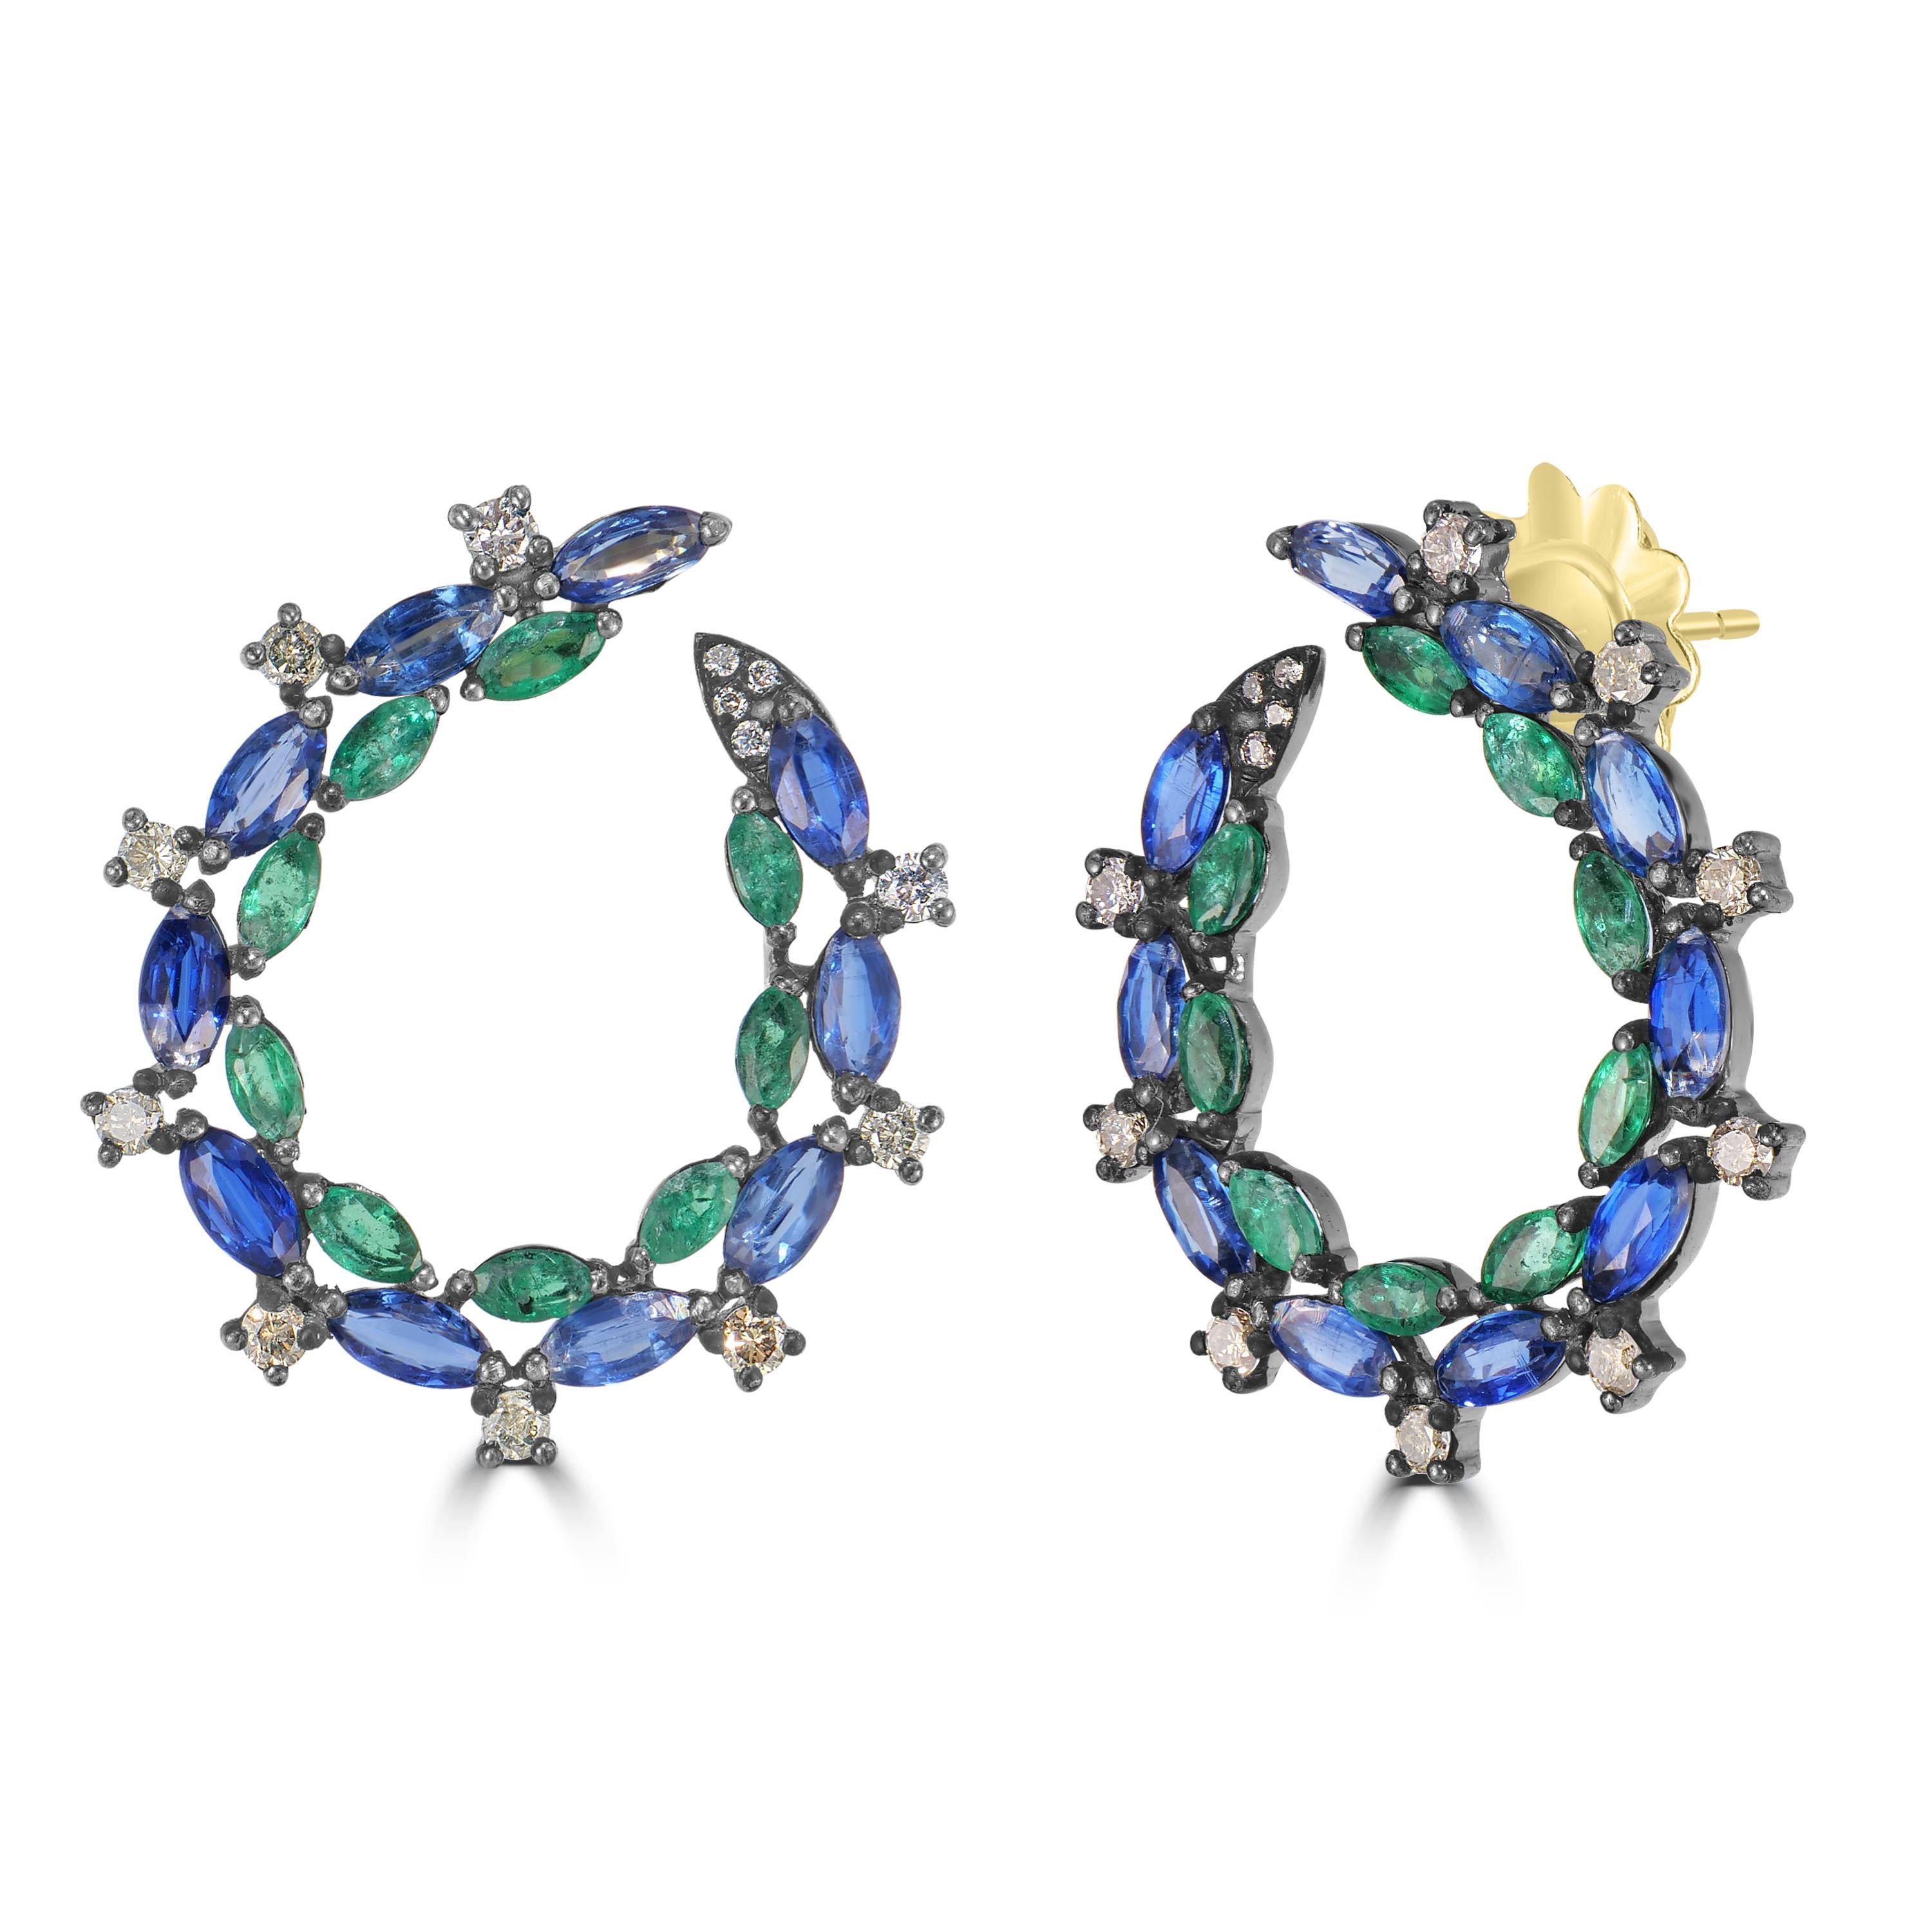 Wir präsentieren unseren viktorianischen 6.3 Cttw. Smaragd-, Kyanit- und Diamant-Ohrringe - eine faszinierende Mischung aus fesselnden Edelsteinen und exquisiter Handwerkskunst.

Diese Reif-Ohrringe definieren Eleganz neu mit einem einzigartigen